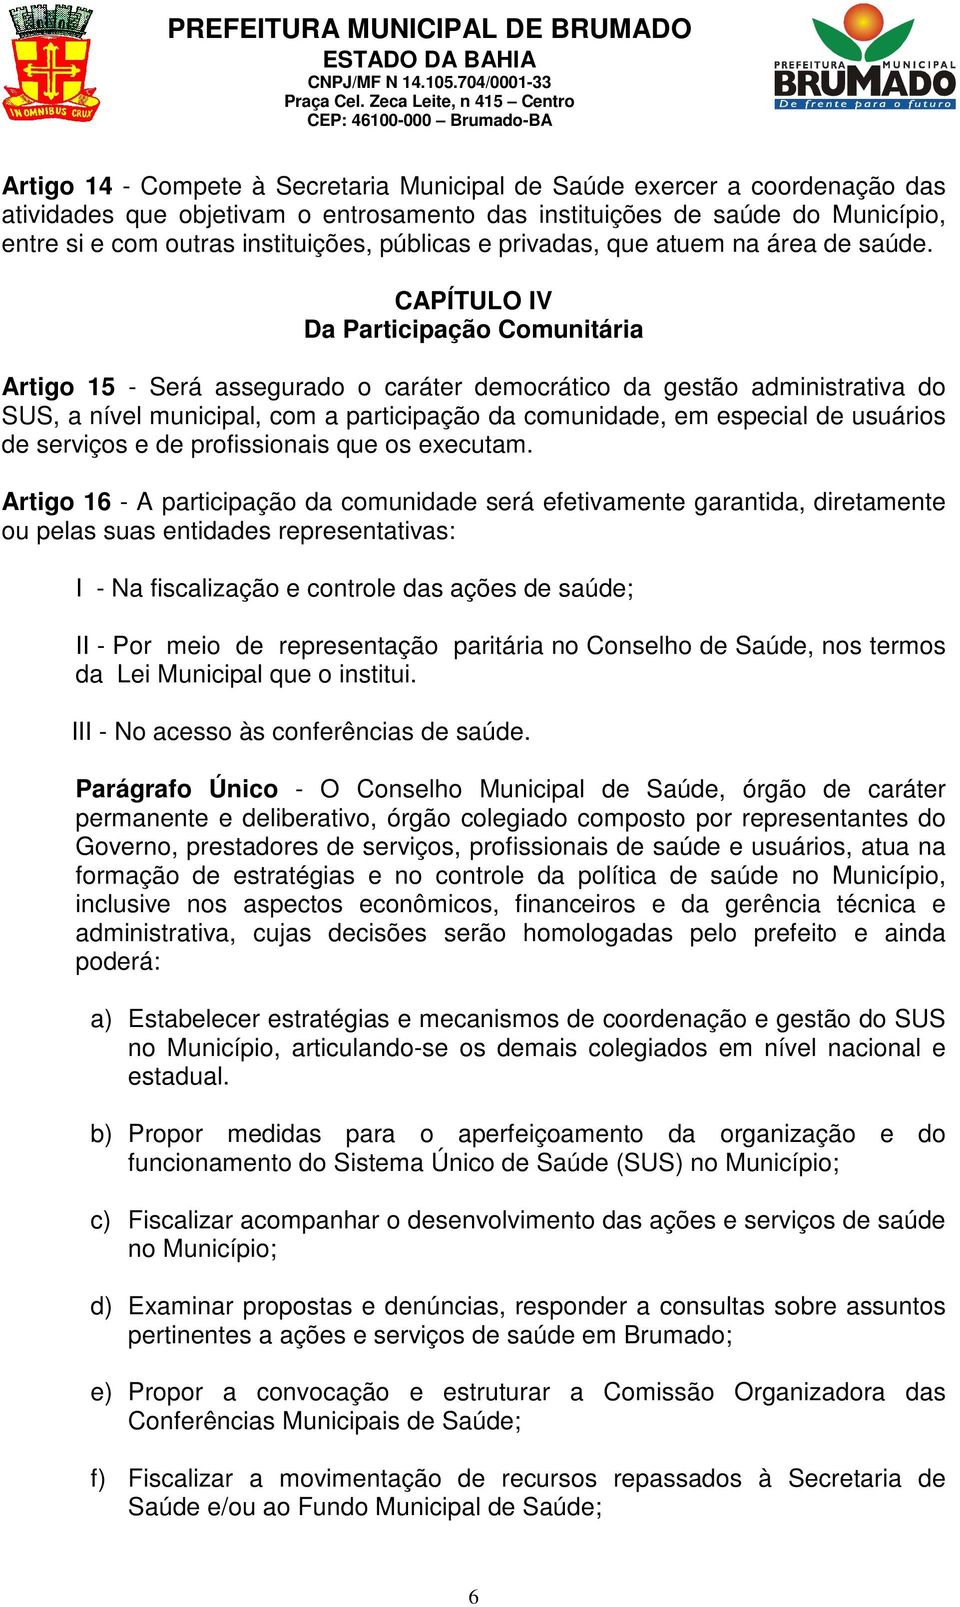 CAPÍTULO IV Da Participação Comunitária Artigo 15 - Será assegurado o caráter democrático da gestão administrativa do SUS, a nível municipal, com a participação da comunidade, em especial de usuários